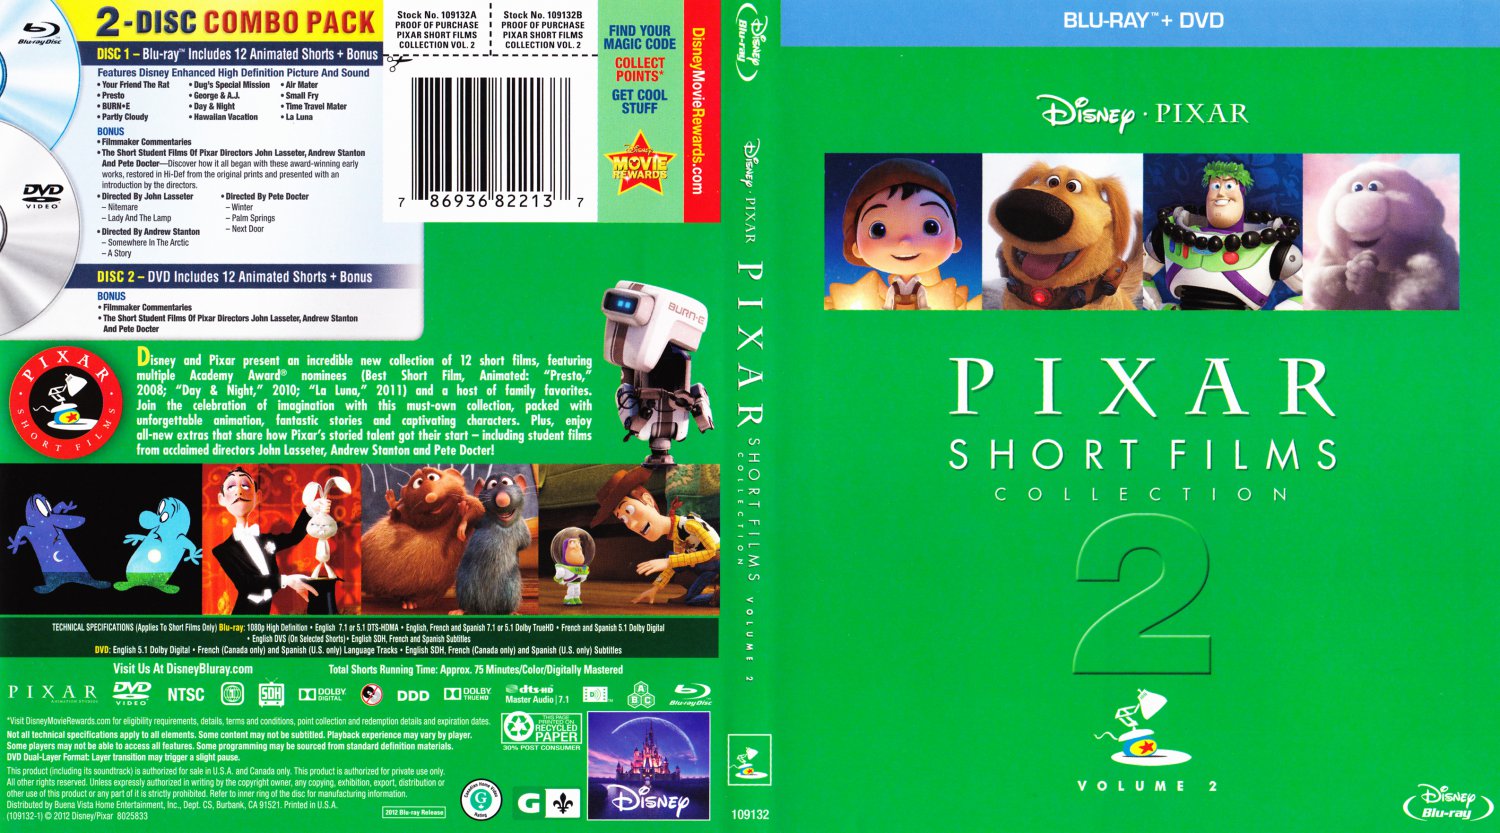 Short films collection. Pixar short films collection. Pixar short films collection Volume 1. Pixar DVD.